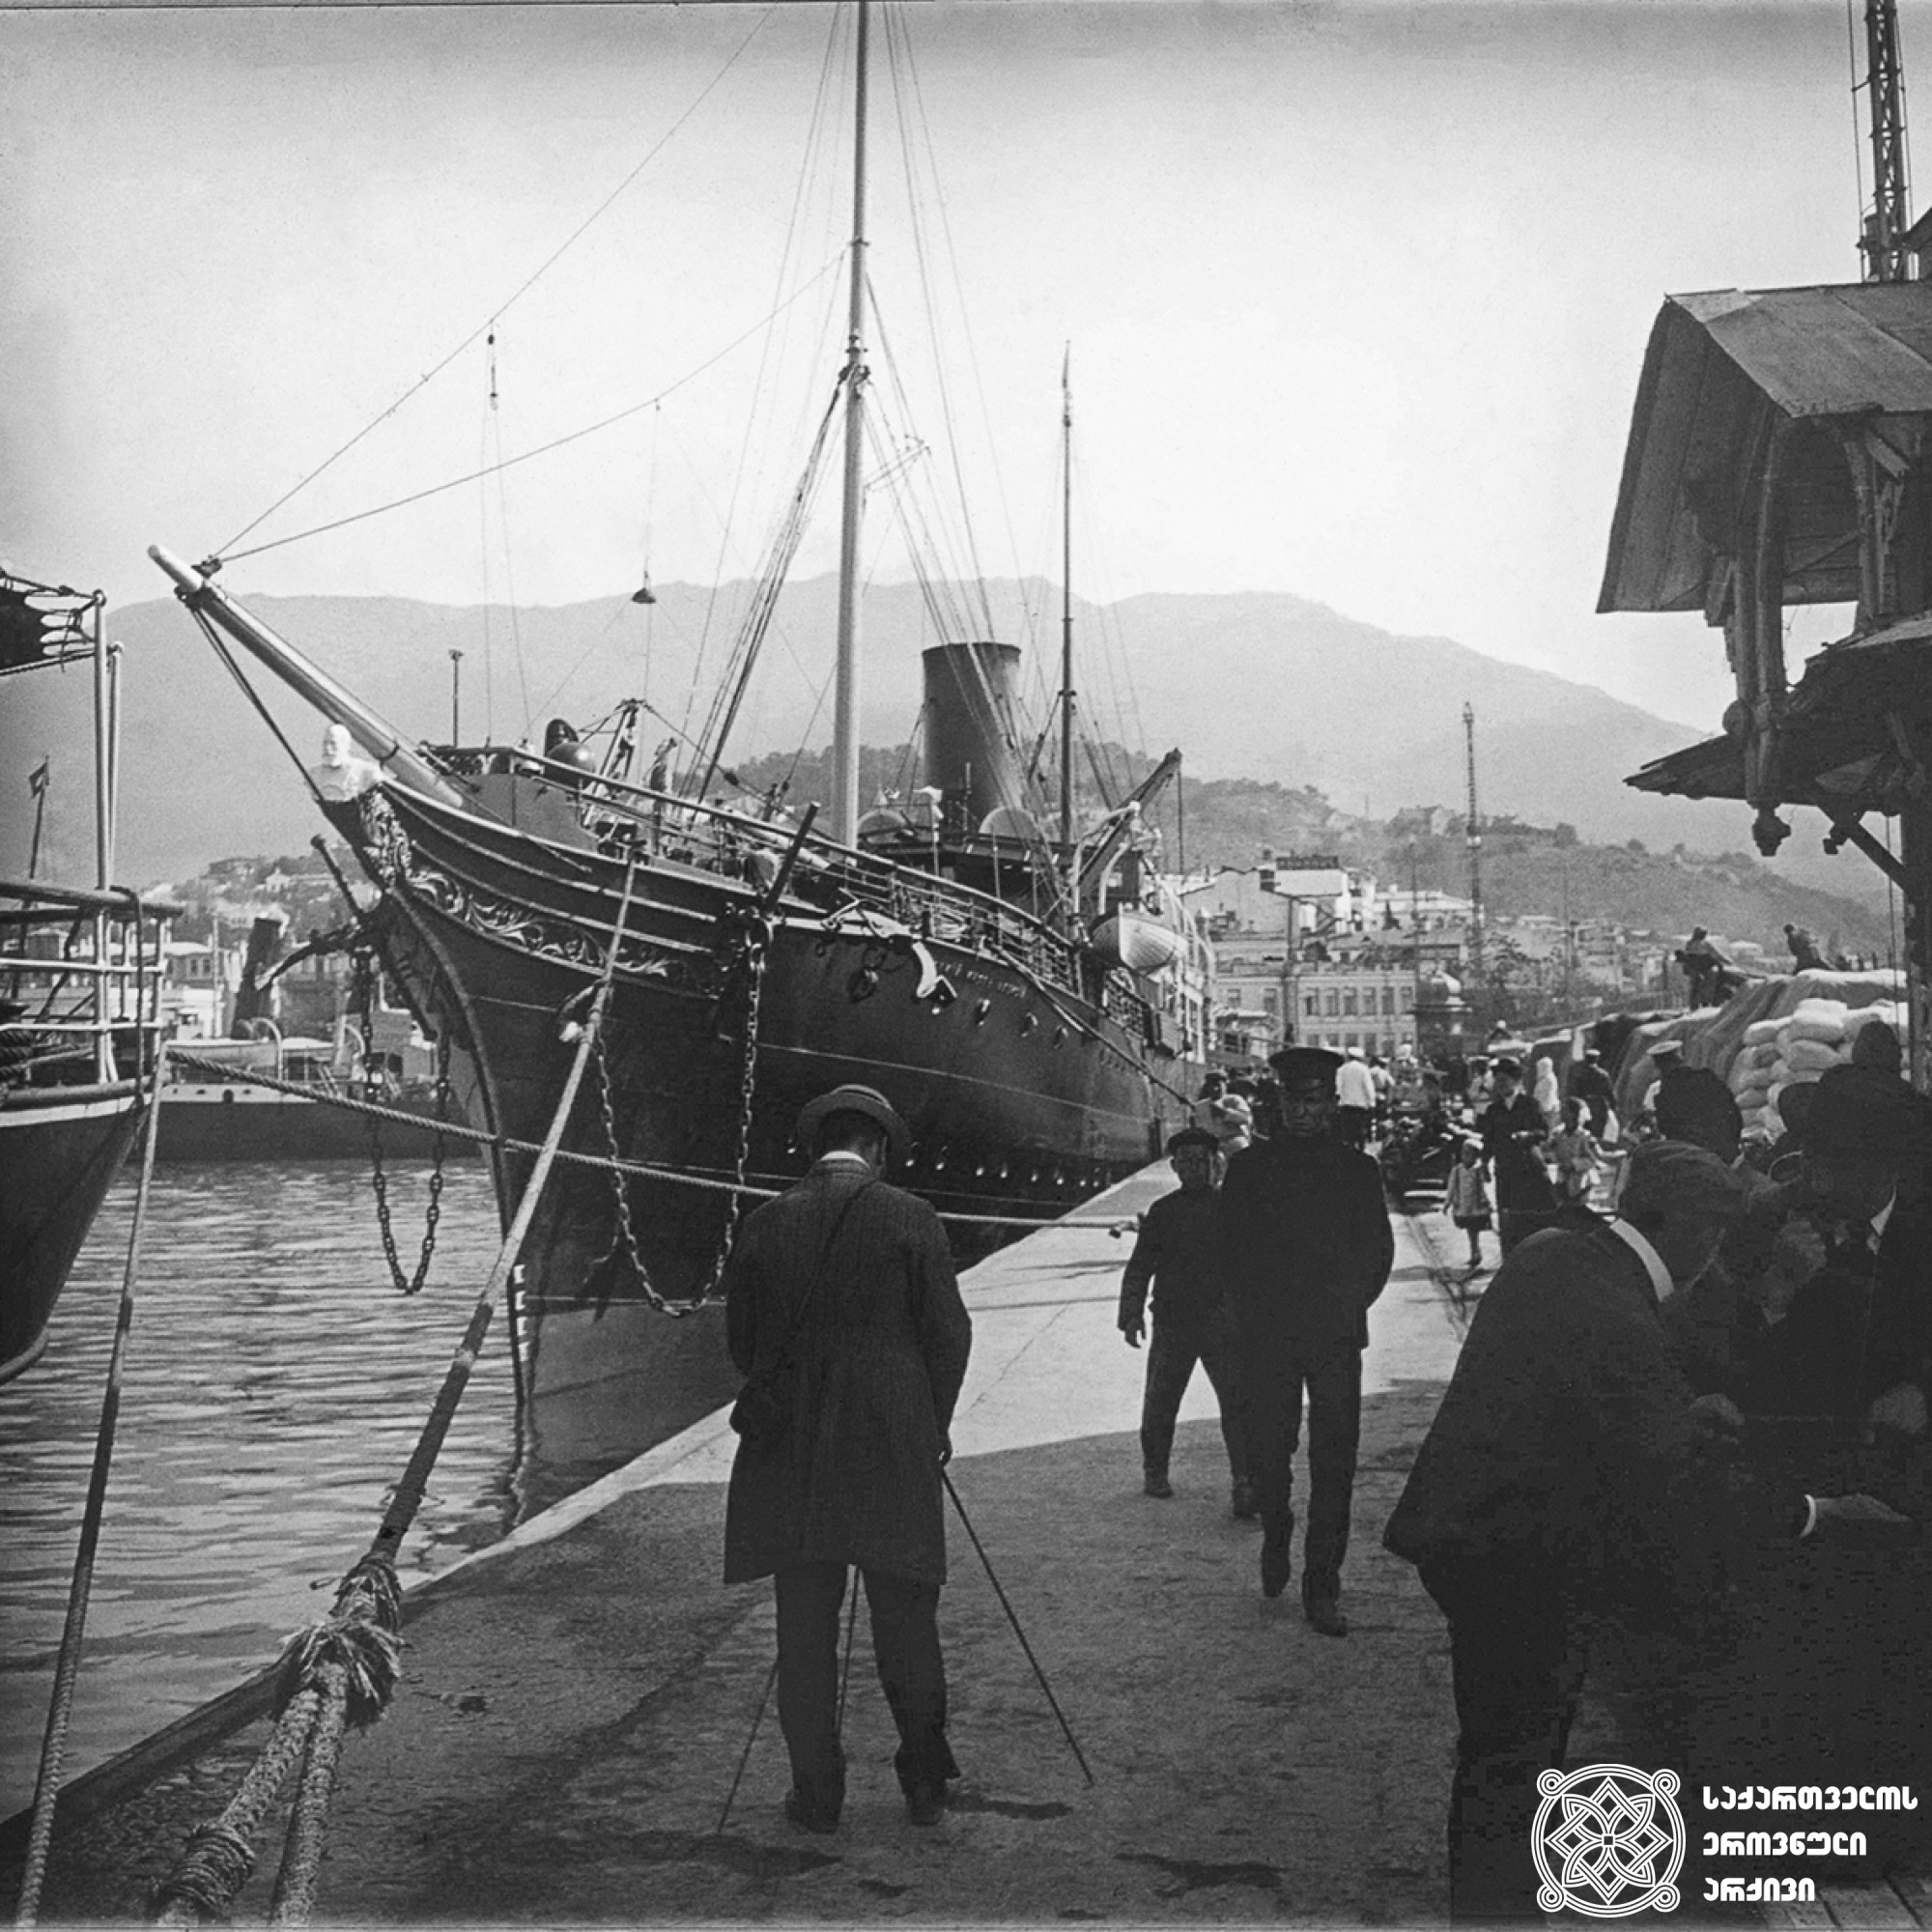 გემი „ალექსი“ ნავსადგურში, იალტა, უკრაინა <br>
1910 წელი <br>
გიგლო ყარალაშვილის კოლექცია  <br>

Ship "Aleksey" in the port, Yalta, Ukraine <br>
1910 <br>
Giglo Karalashvili collection